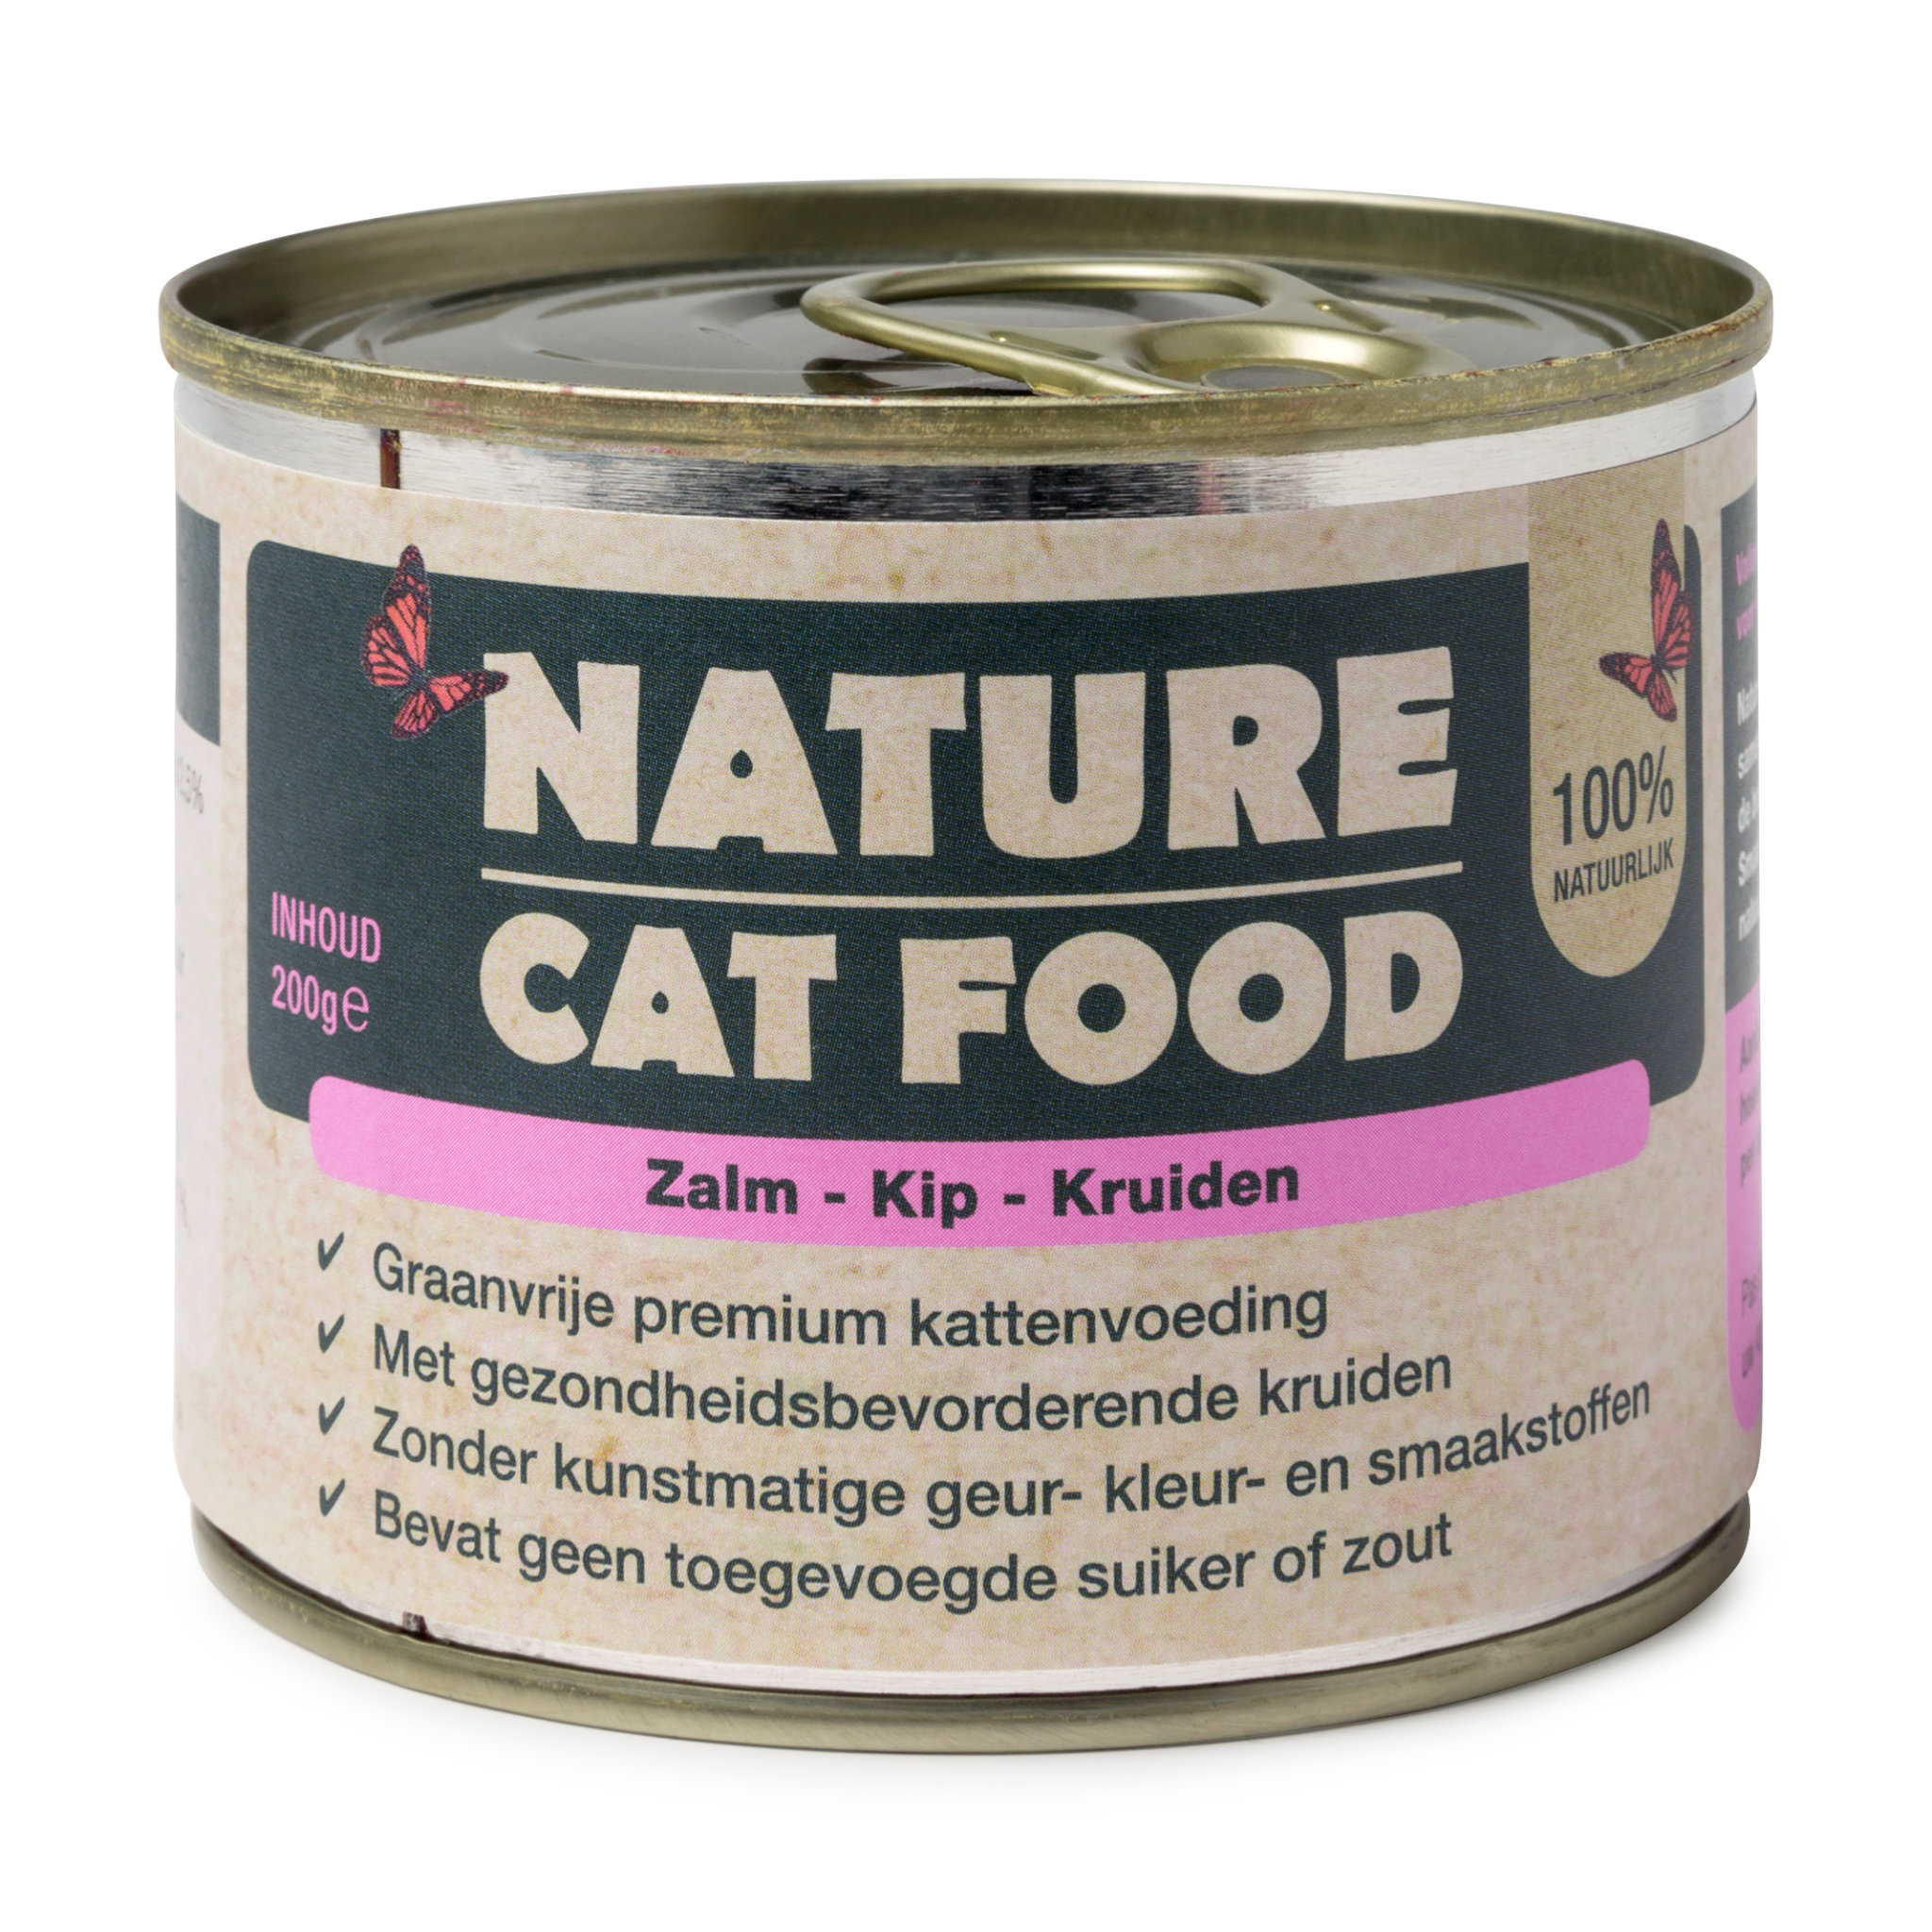 Natvoer voor Katten - Nature Cat Food - Zalm, Kip & Kruiden